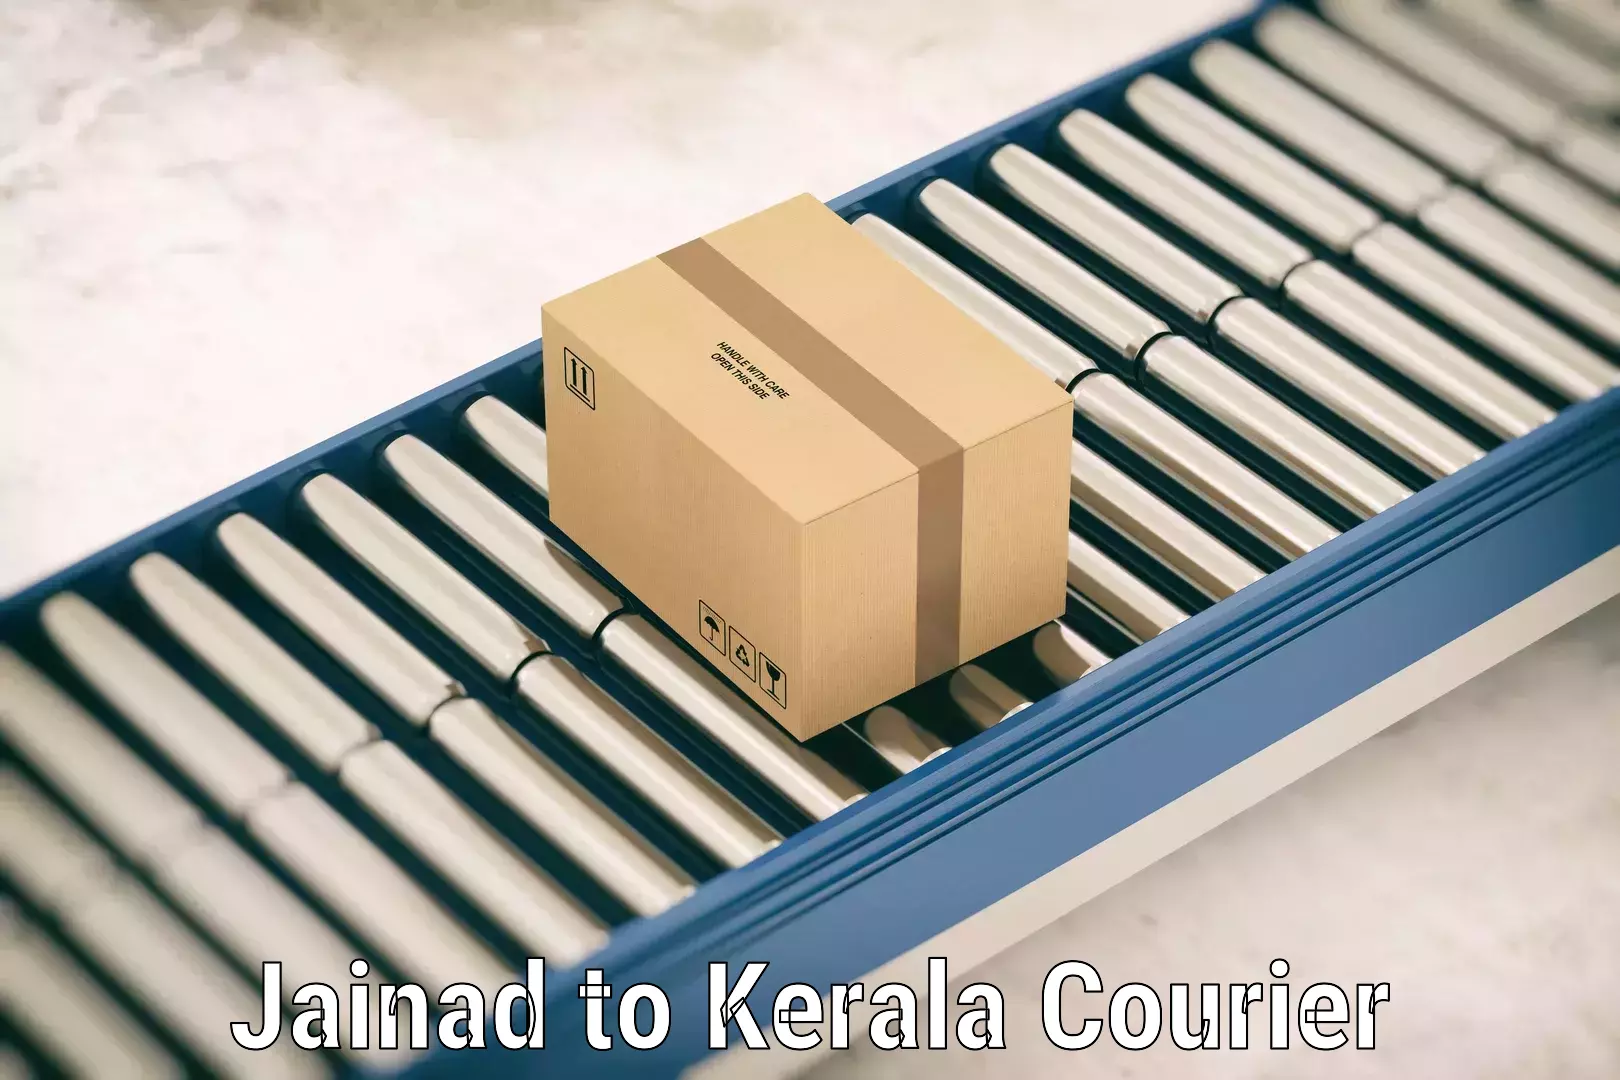 Baggage shipping experts Jainad to Kerala